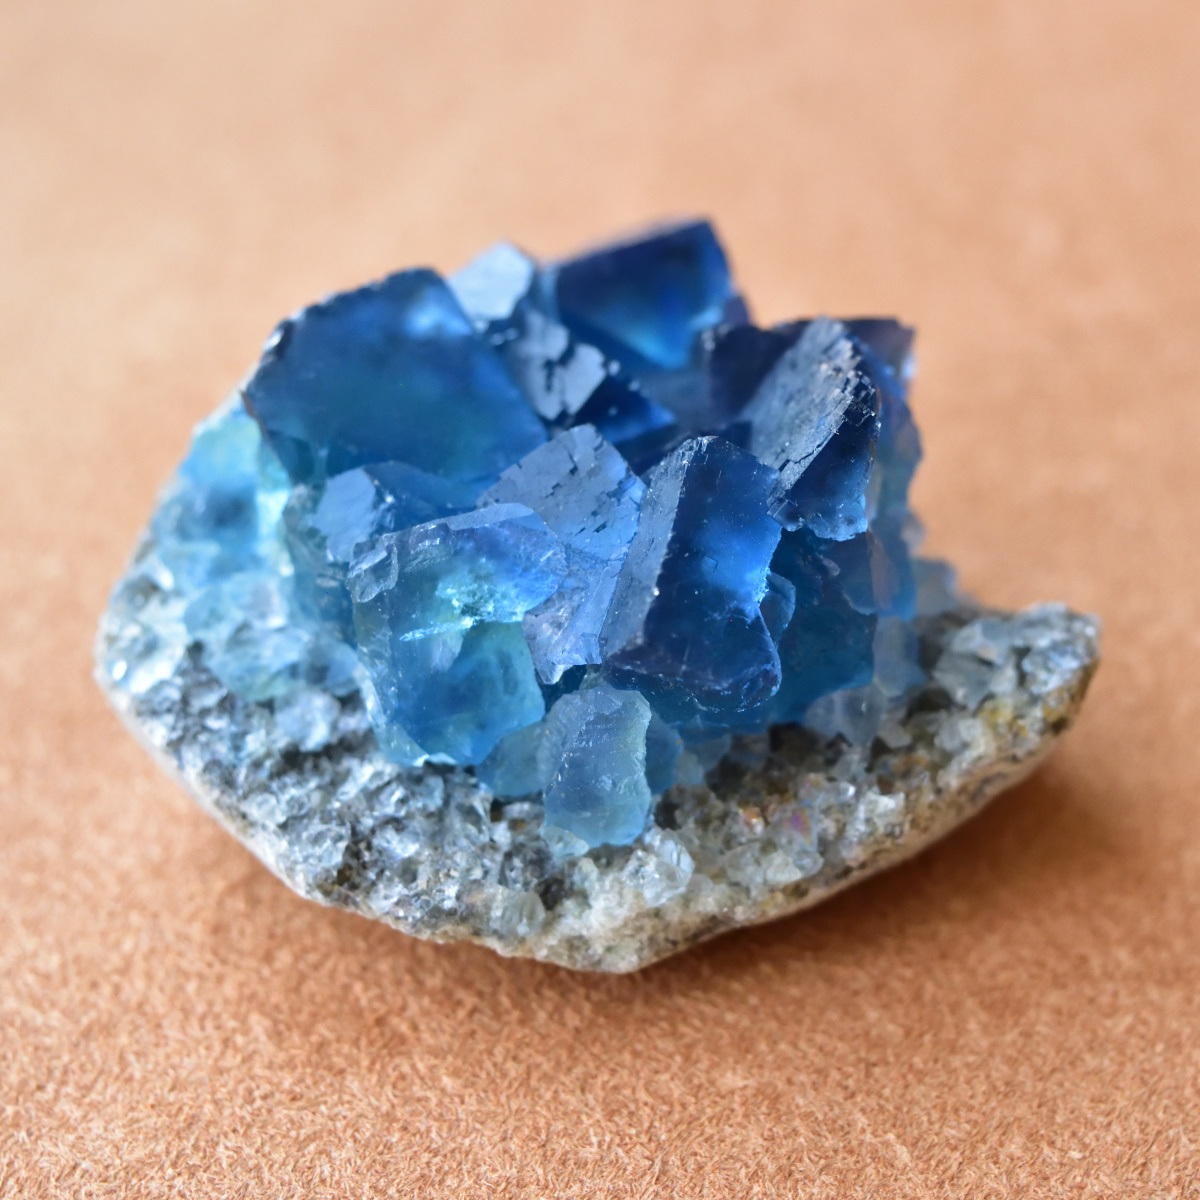 フローライト（蛍石） Sweet Blue 中国・福建省産 120g/ 鉱物・結晶原石 - 天然石・パワーストーンのルース、クリスタル、原石